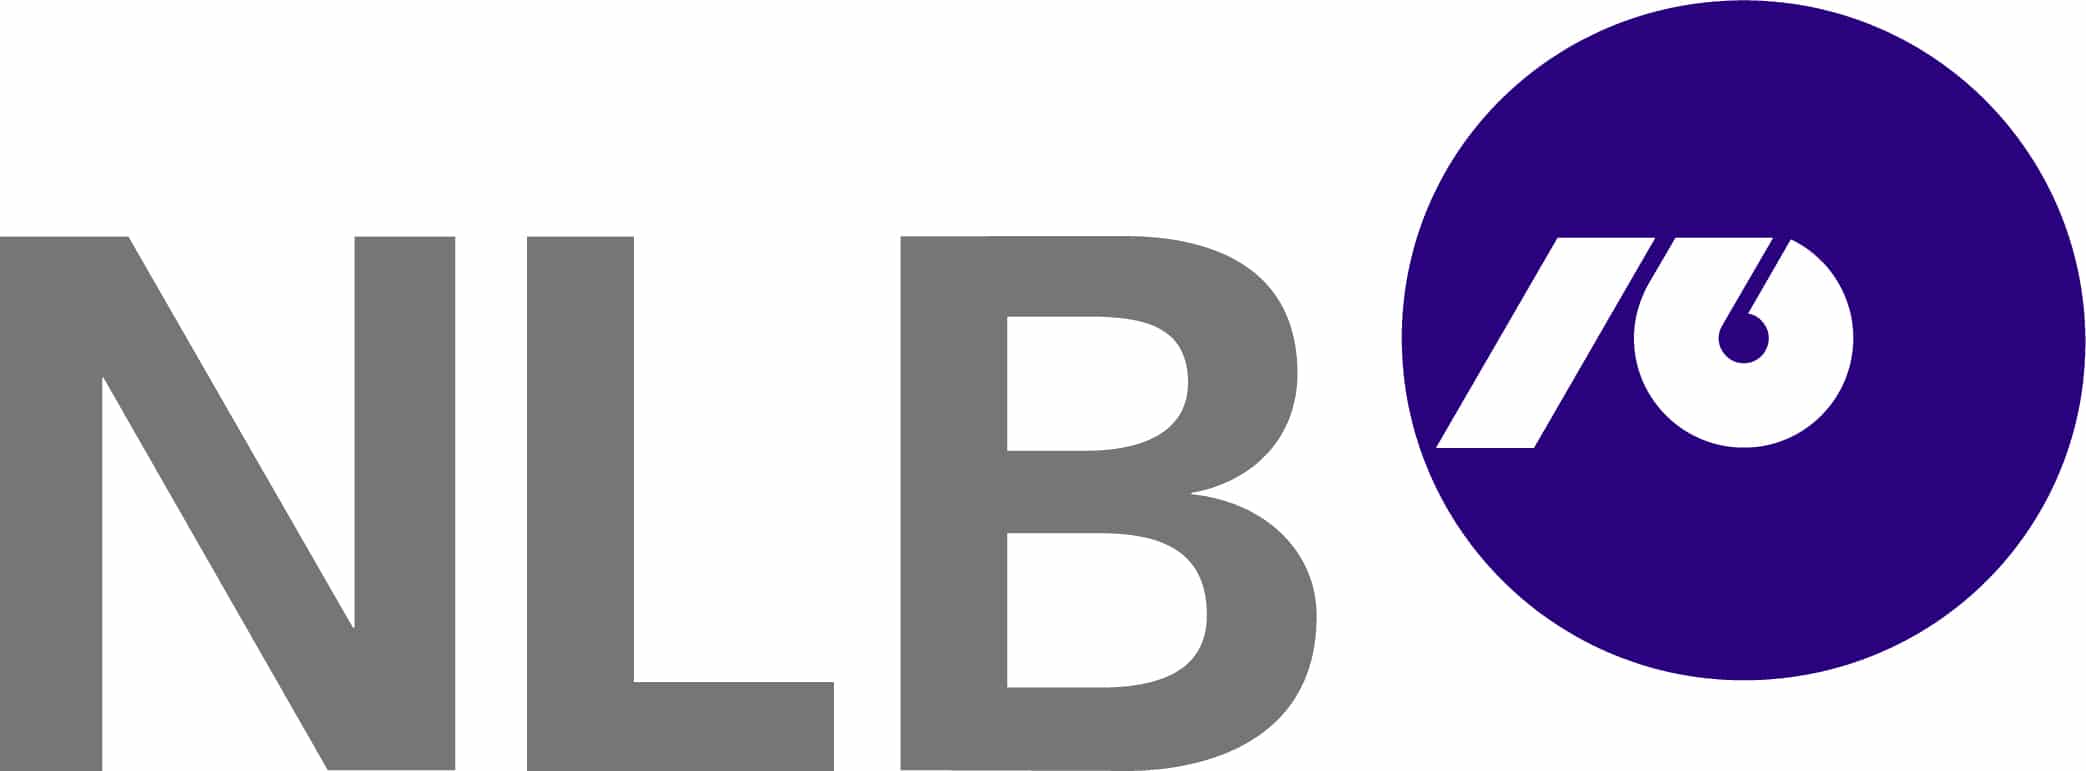 Nova_Ljubljanska_banka_logo